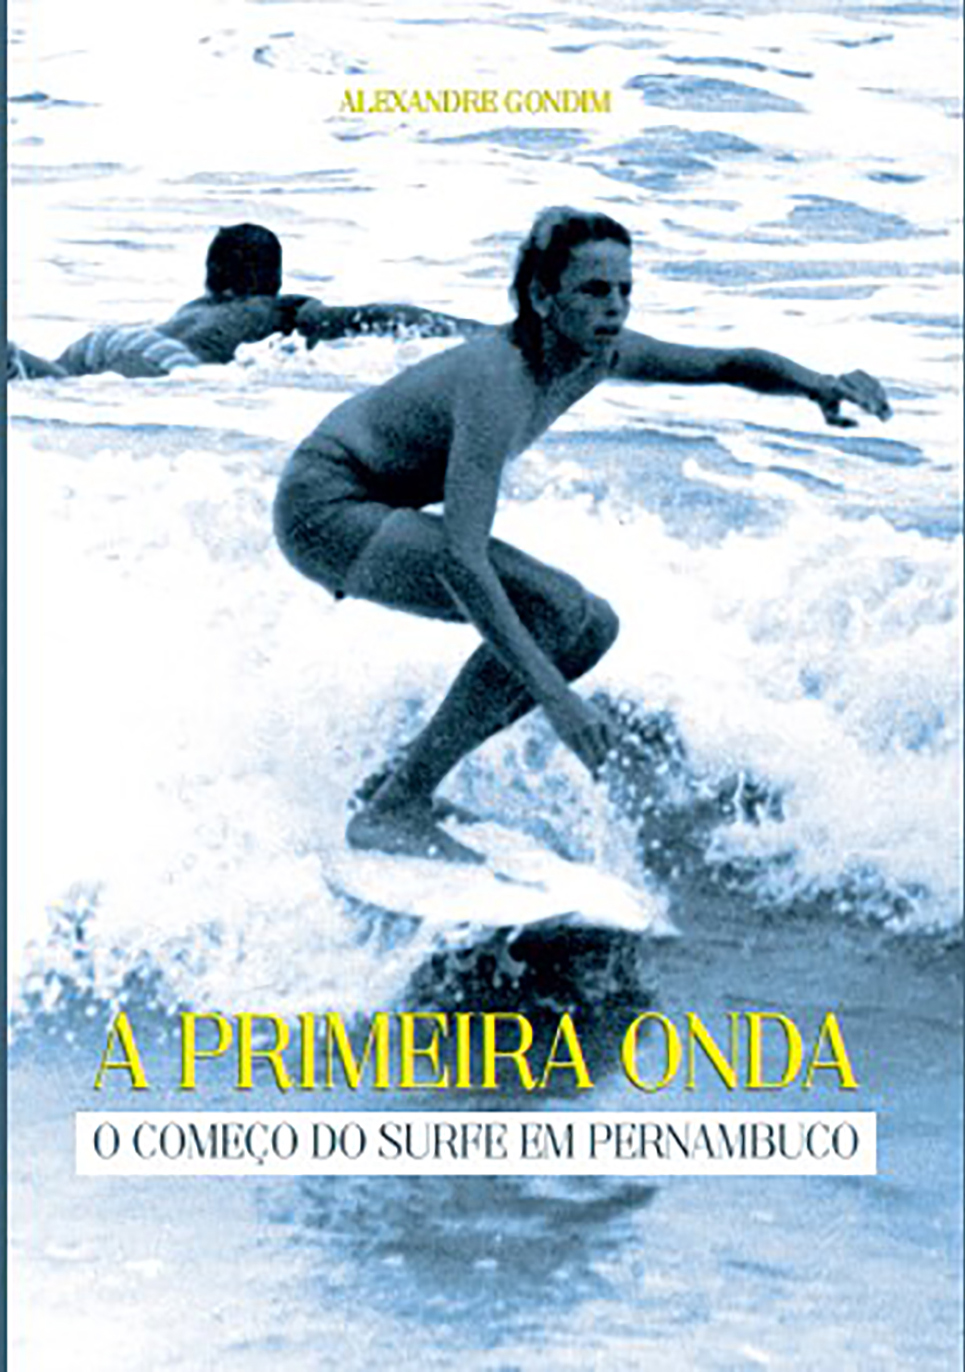 Capa do livro “A primeira Onda – O começo do Surfe em Pernambuco”.